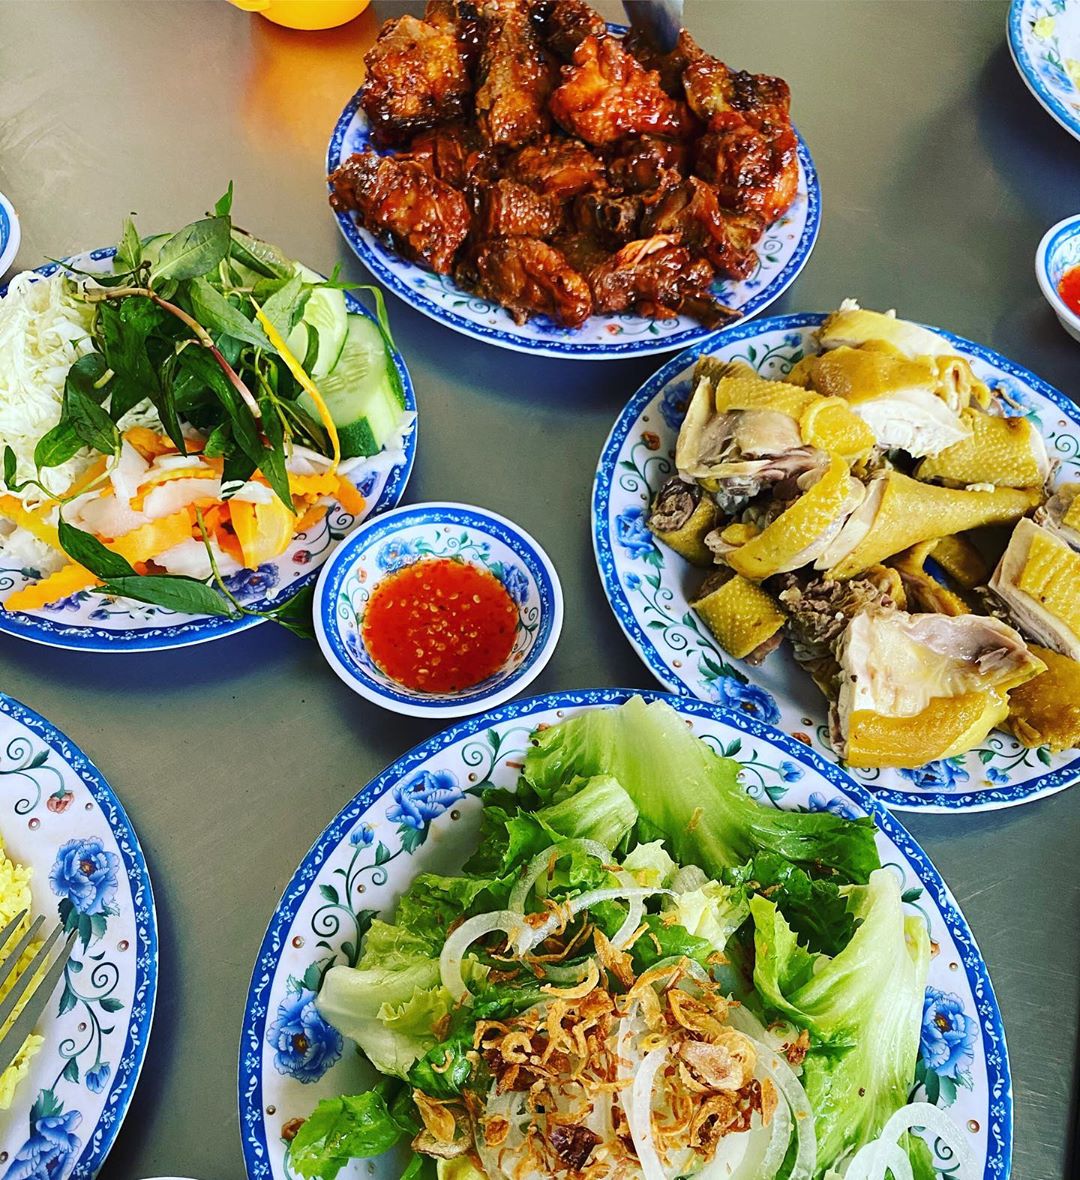 Cơm gà Hải Phan Rang nổi tiếng tại thành phố Đà Lạt